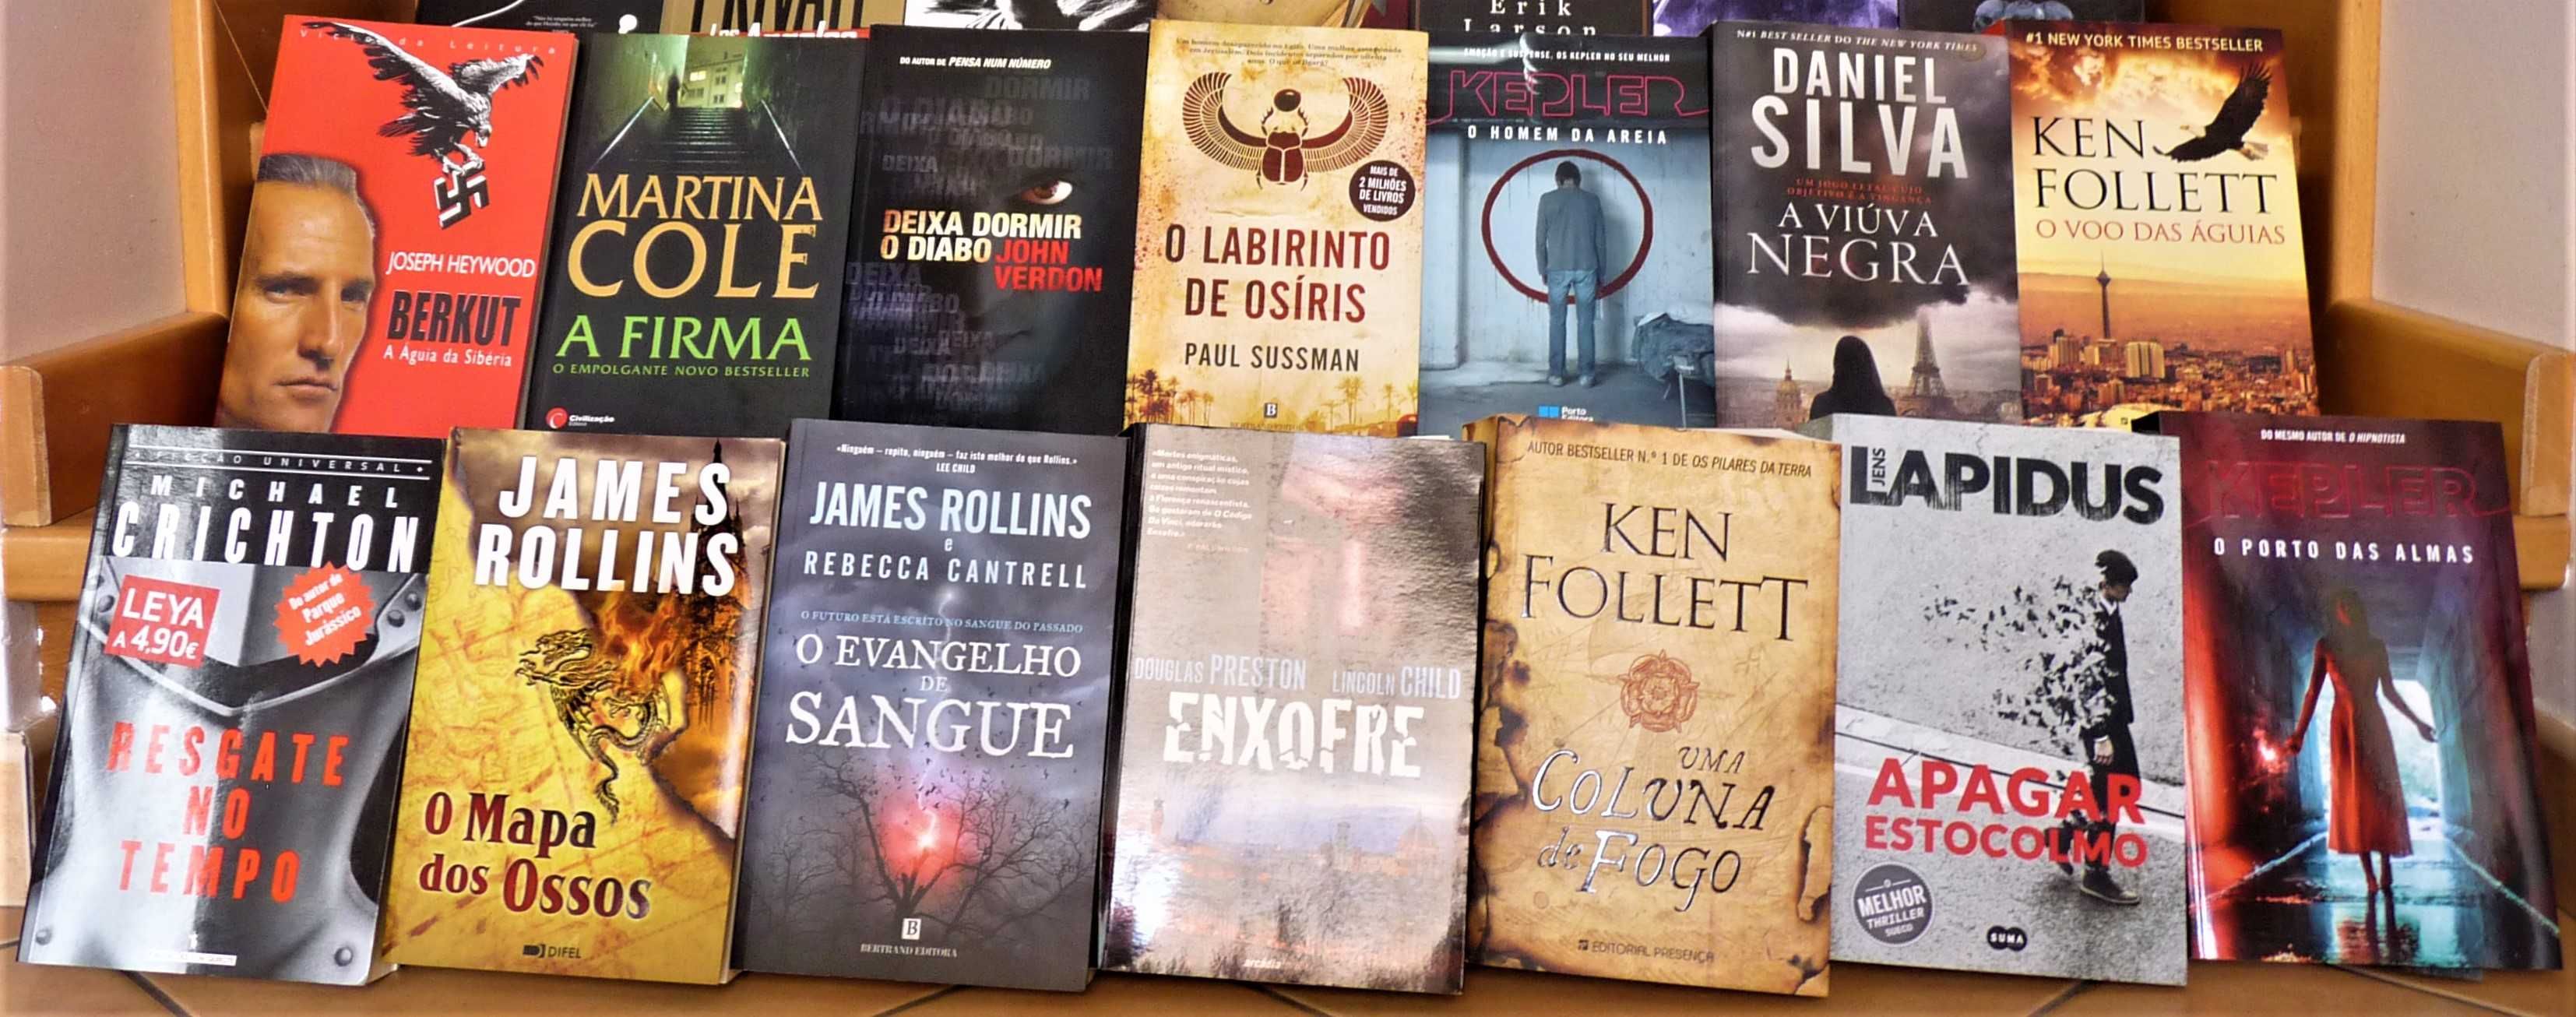 31 livros praticamente novos em língua portuguesa (baixa de preço)